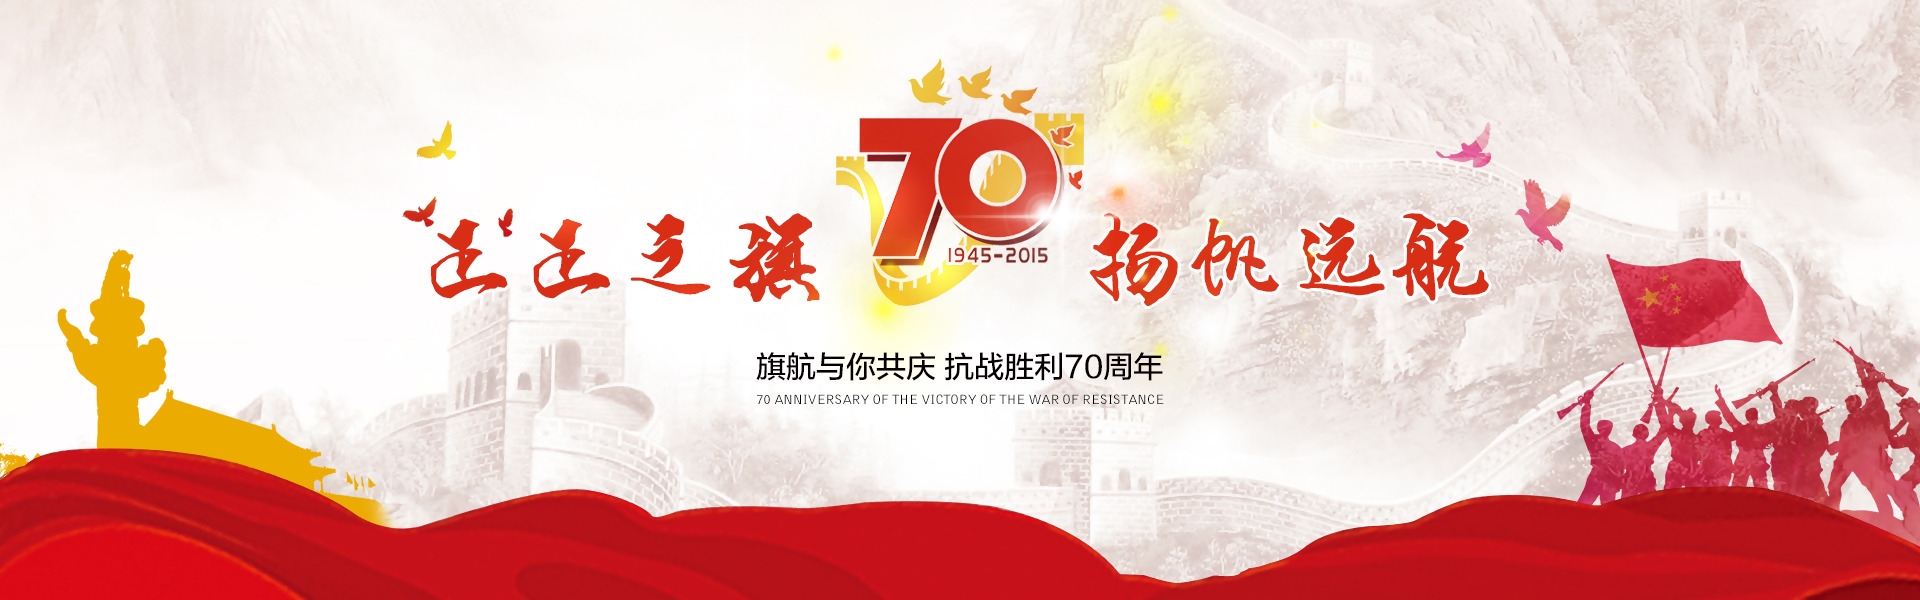 艾思博祝贺新中国成立70周年